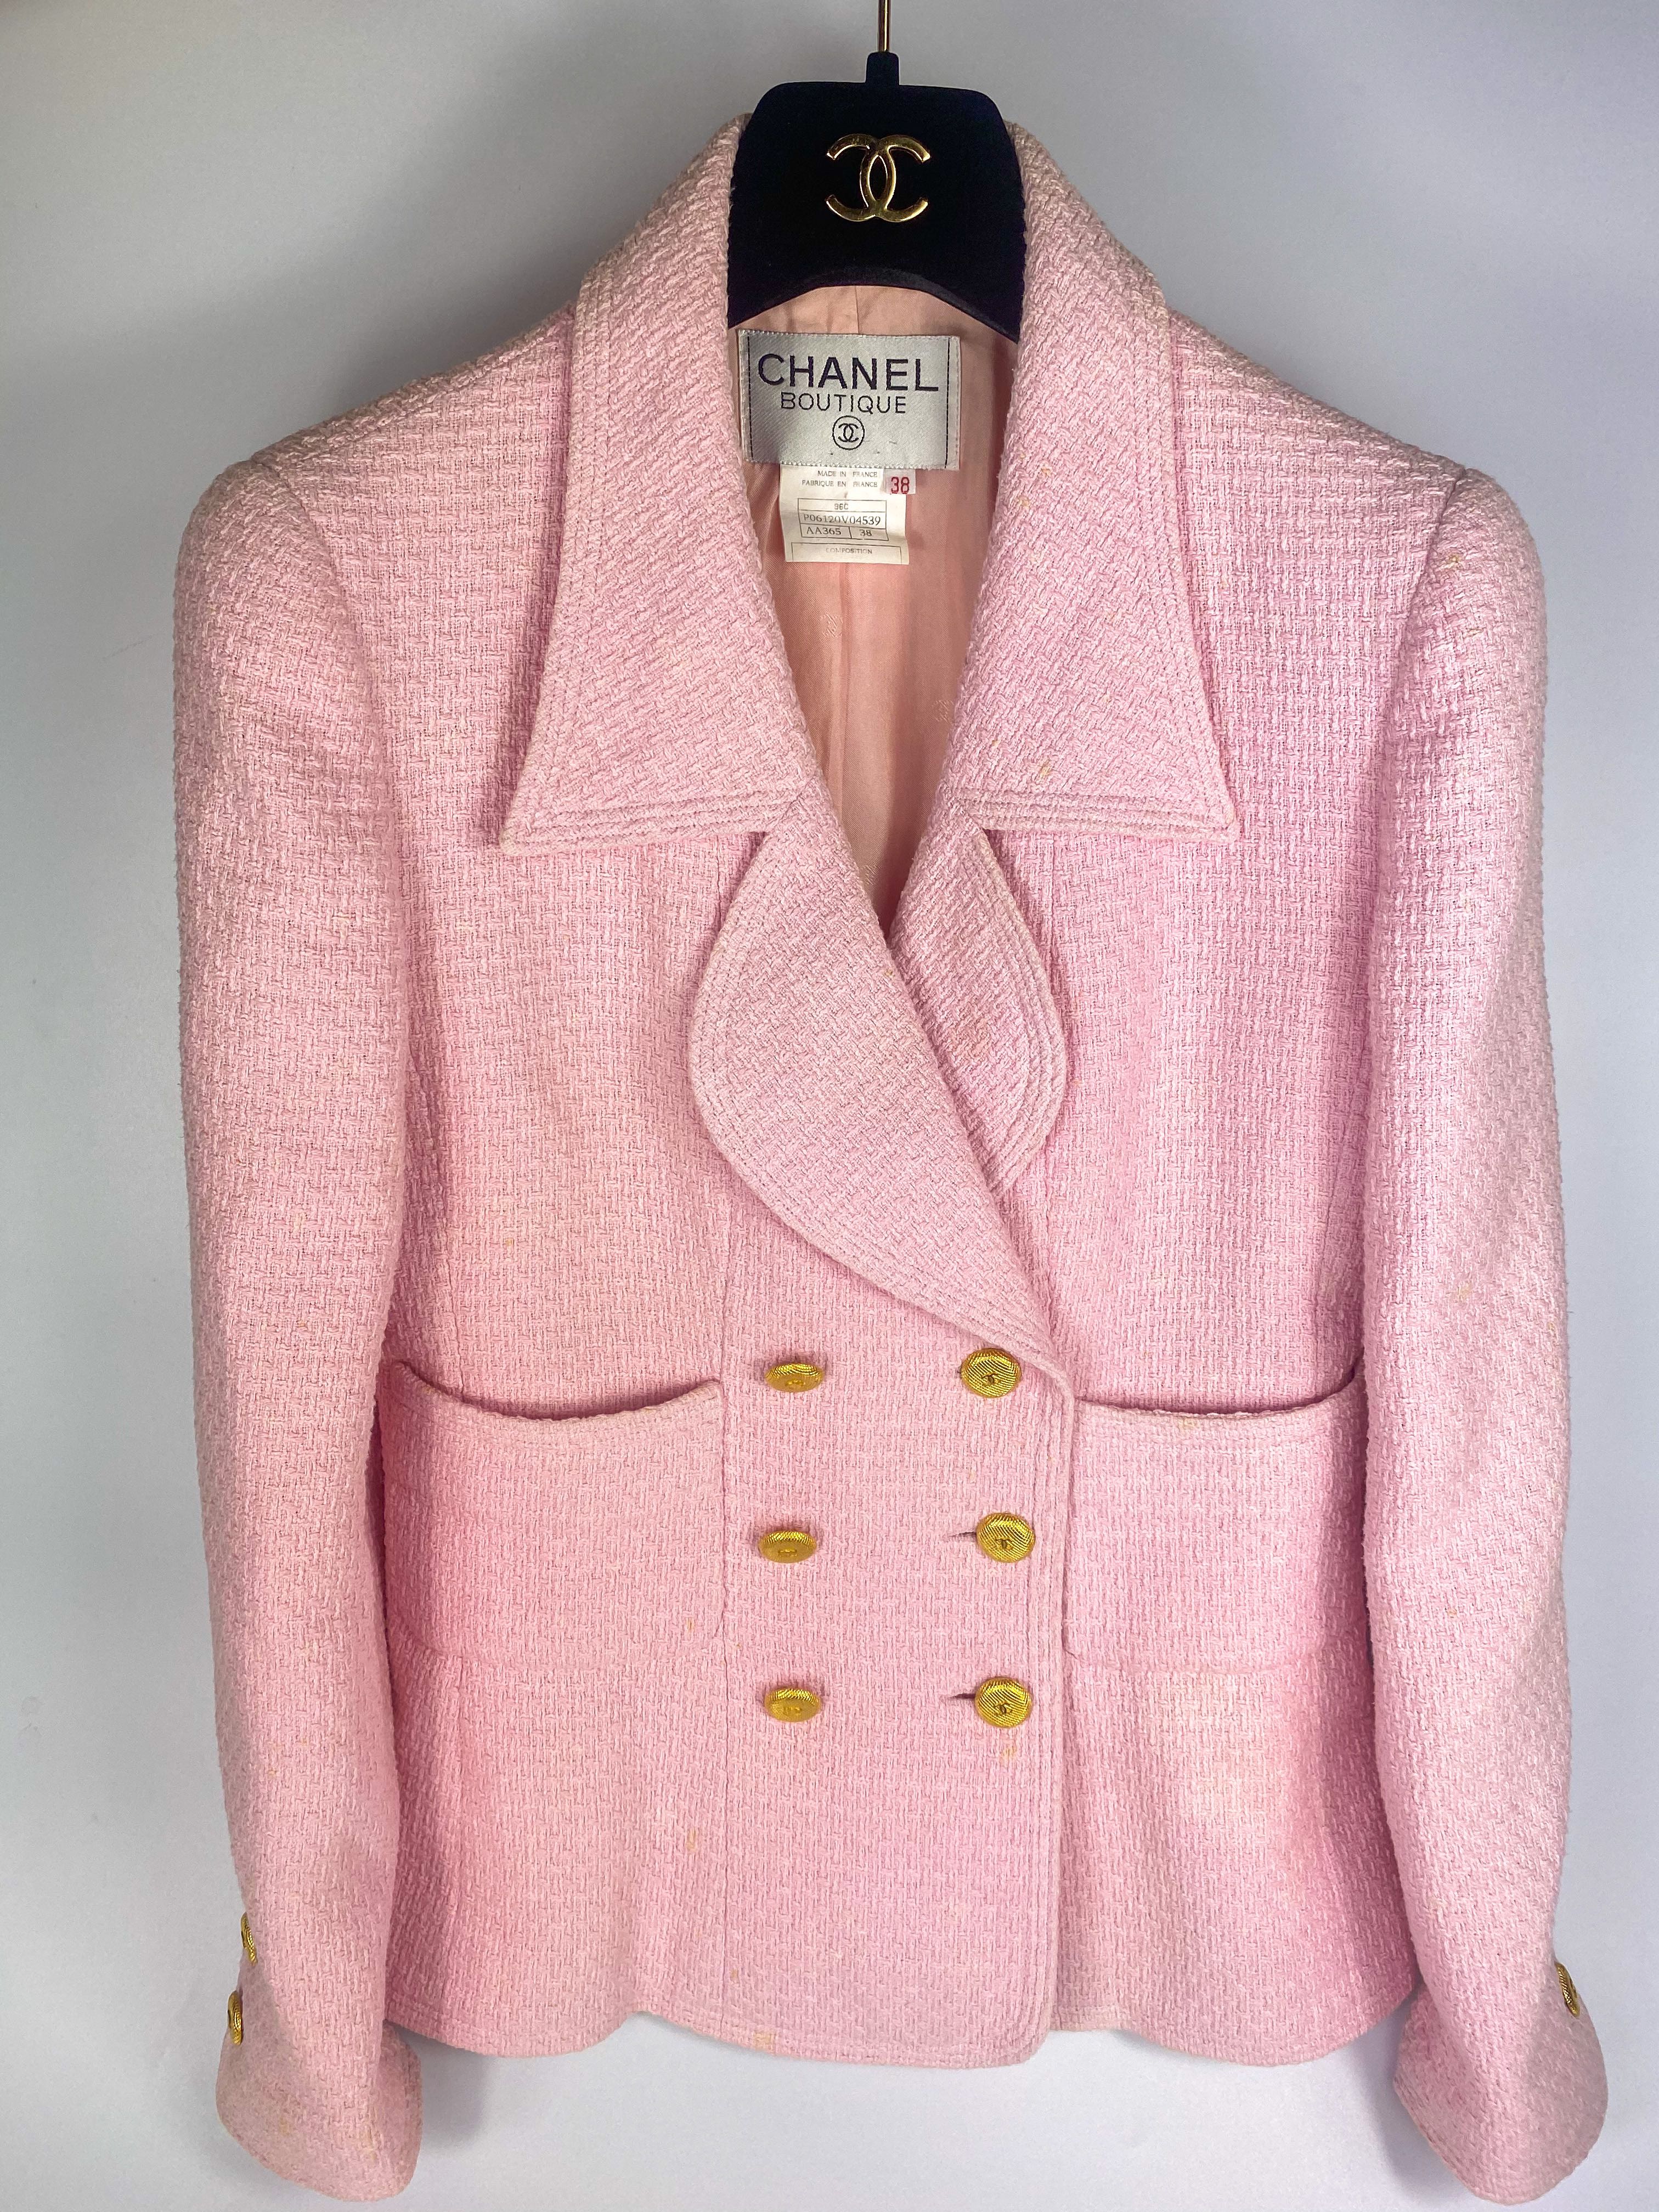 35 Chanel tweed pink jacket ideas  tweed pink tweed jacket tweed jacket  outfit